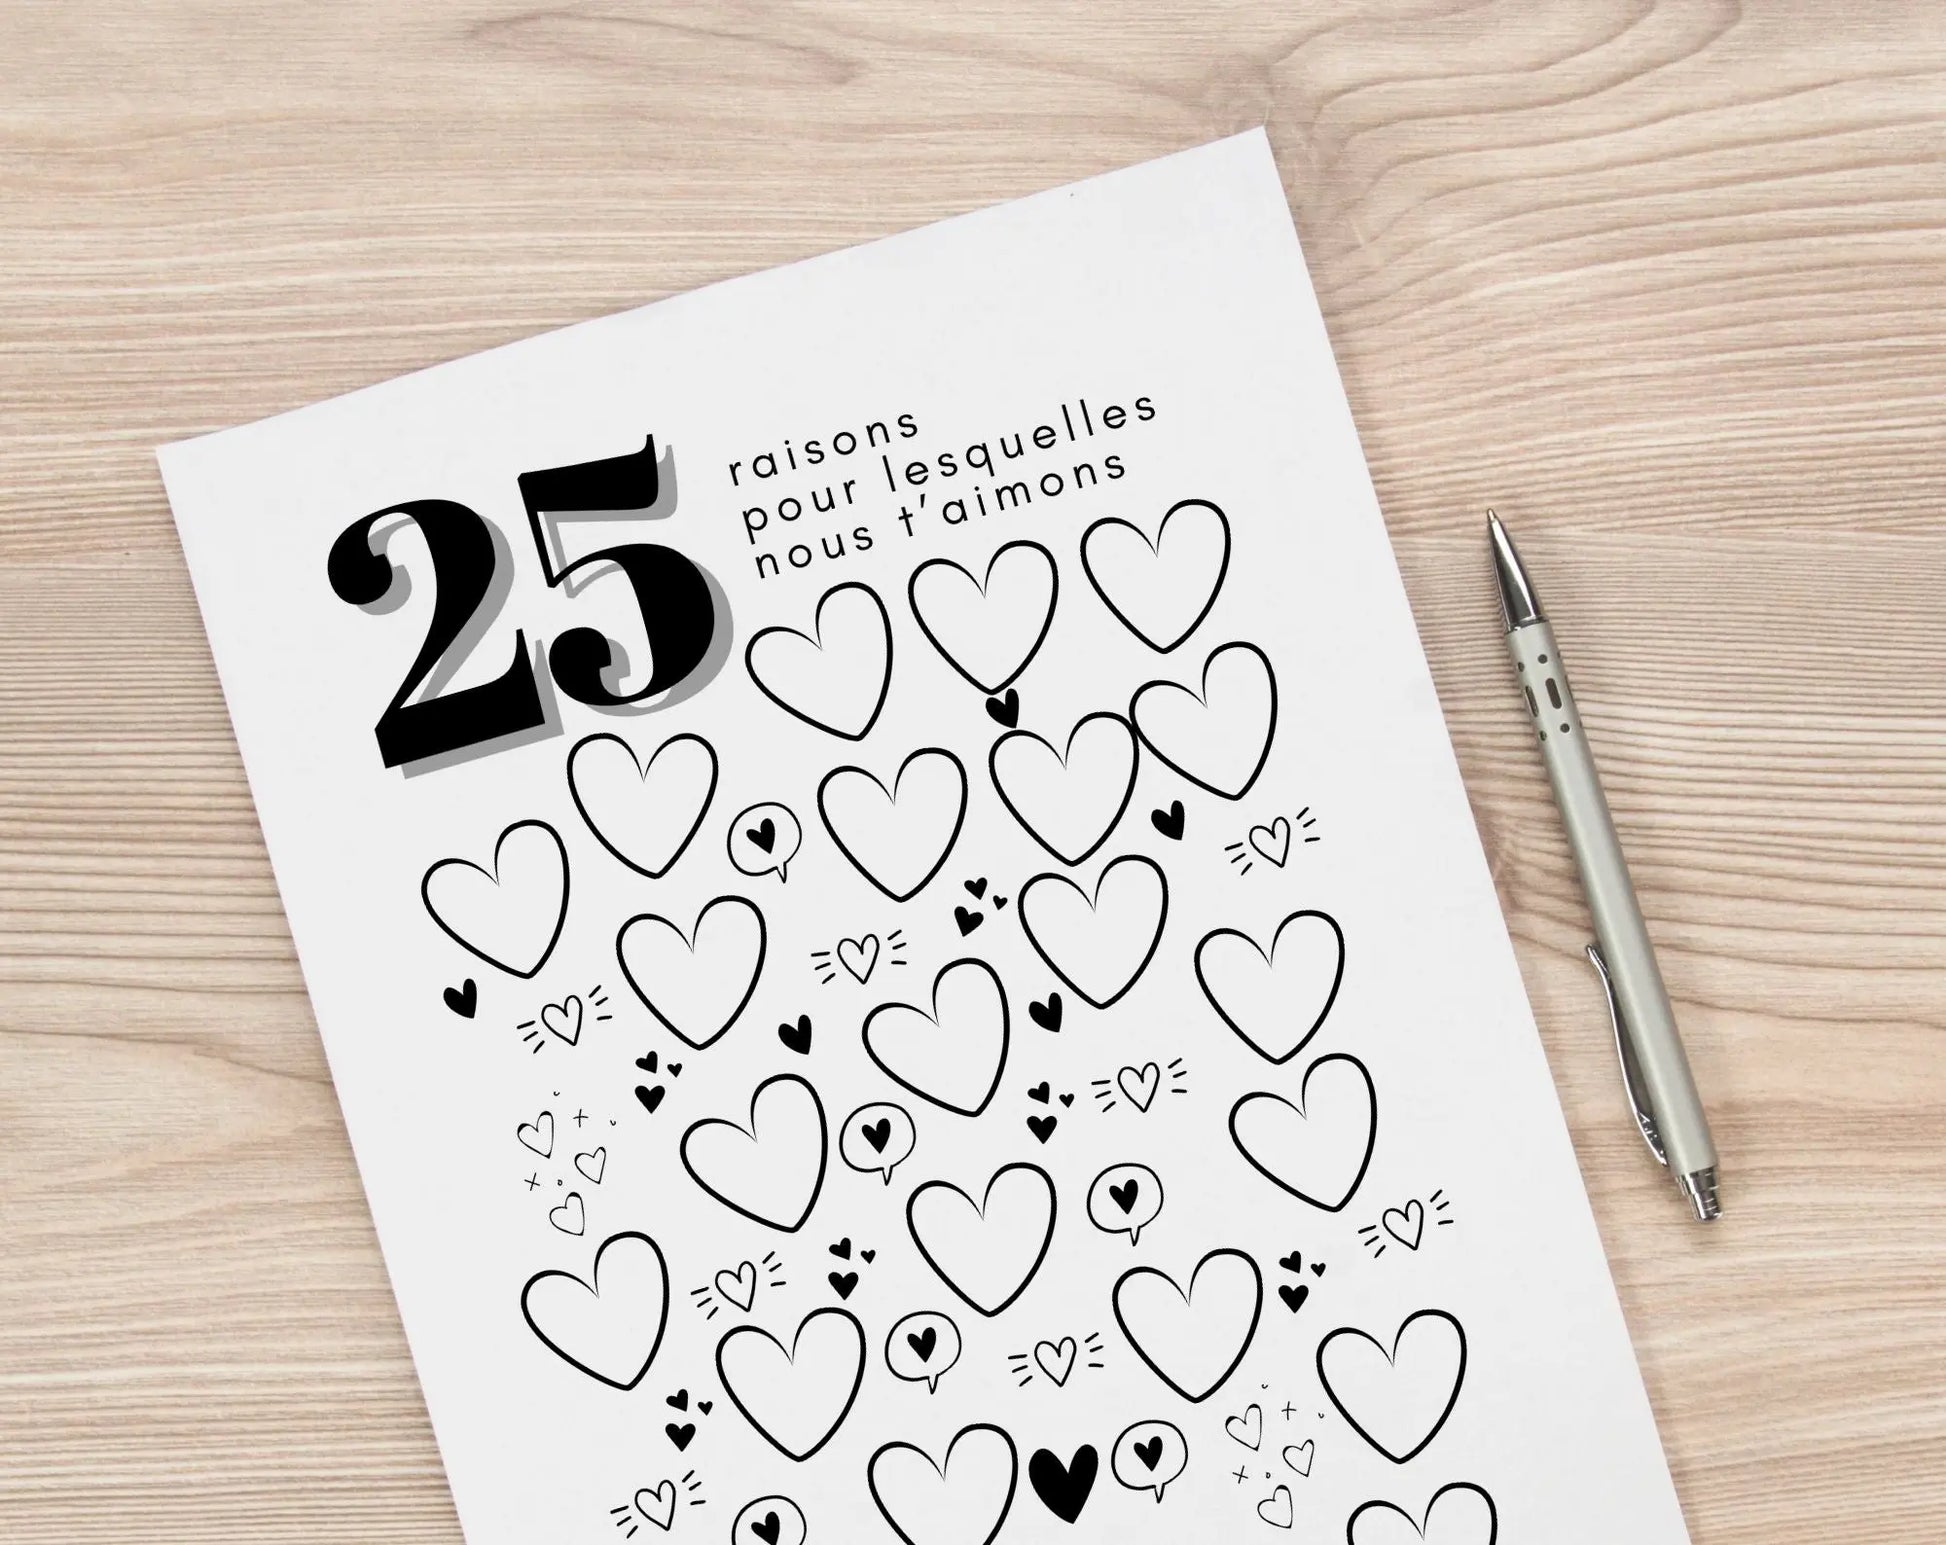 Affiche 25 raisons pour lesquelles nous t’aimons - Livre d'or 25 ans FLTMfrance